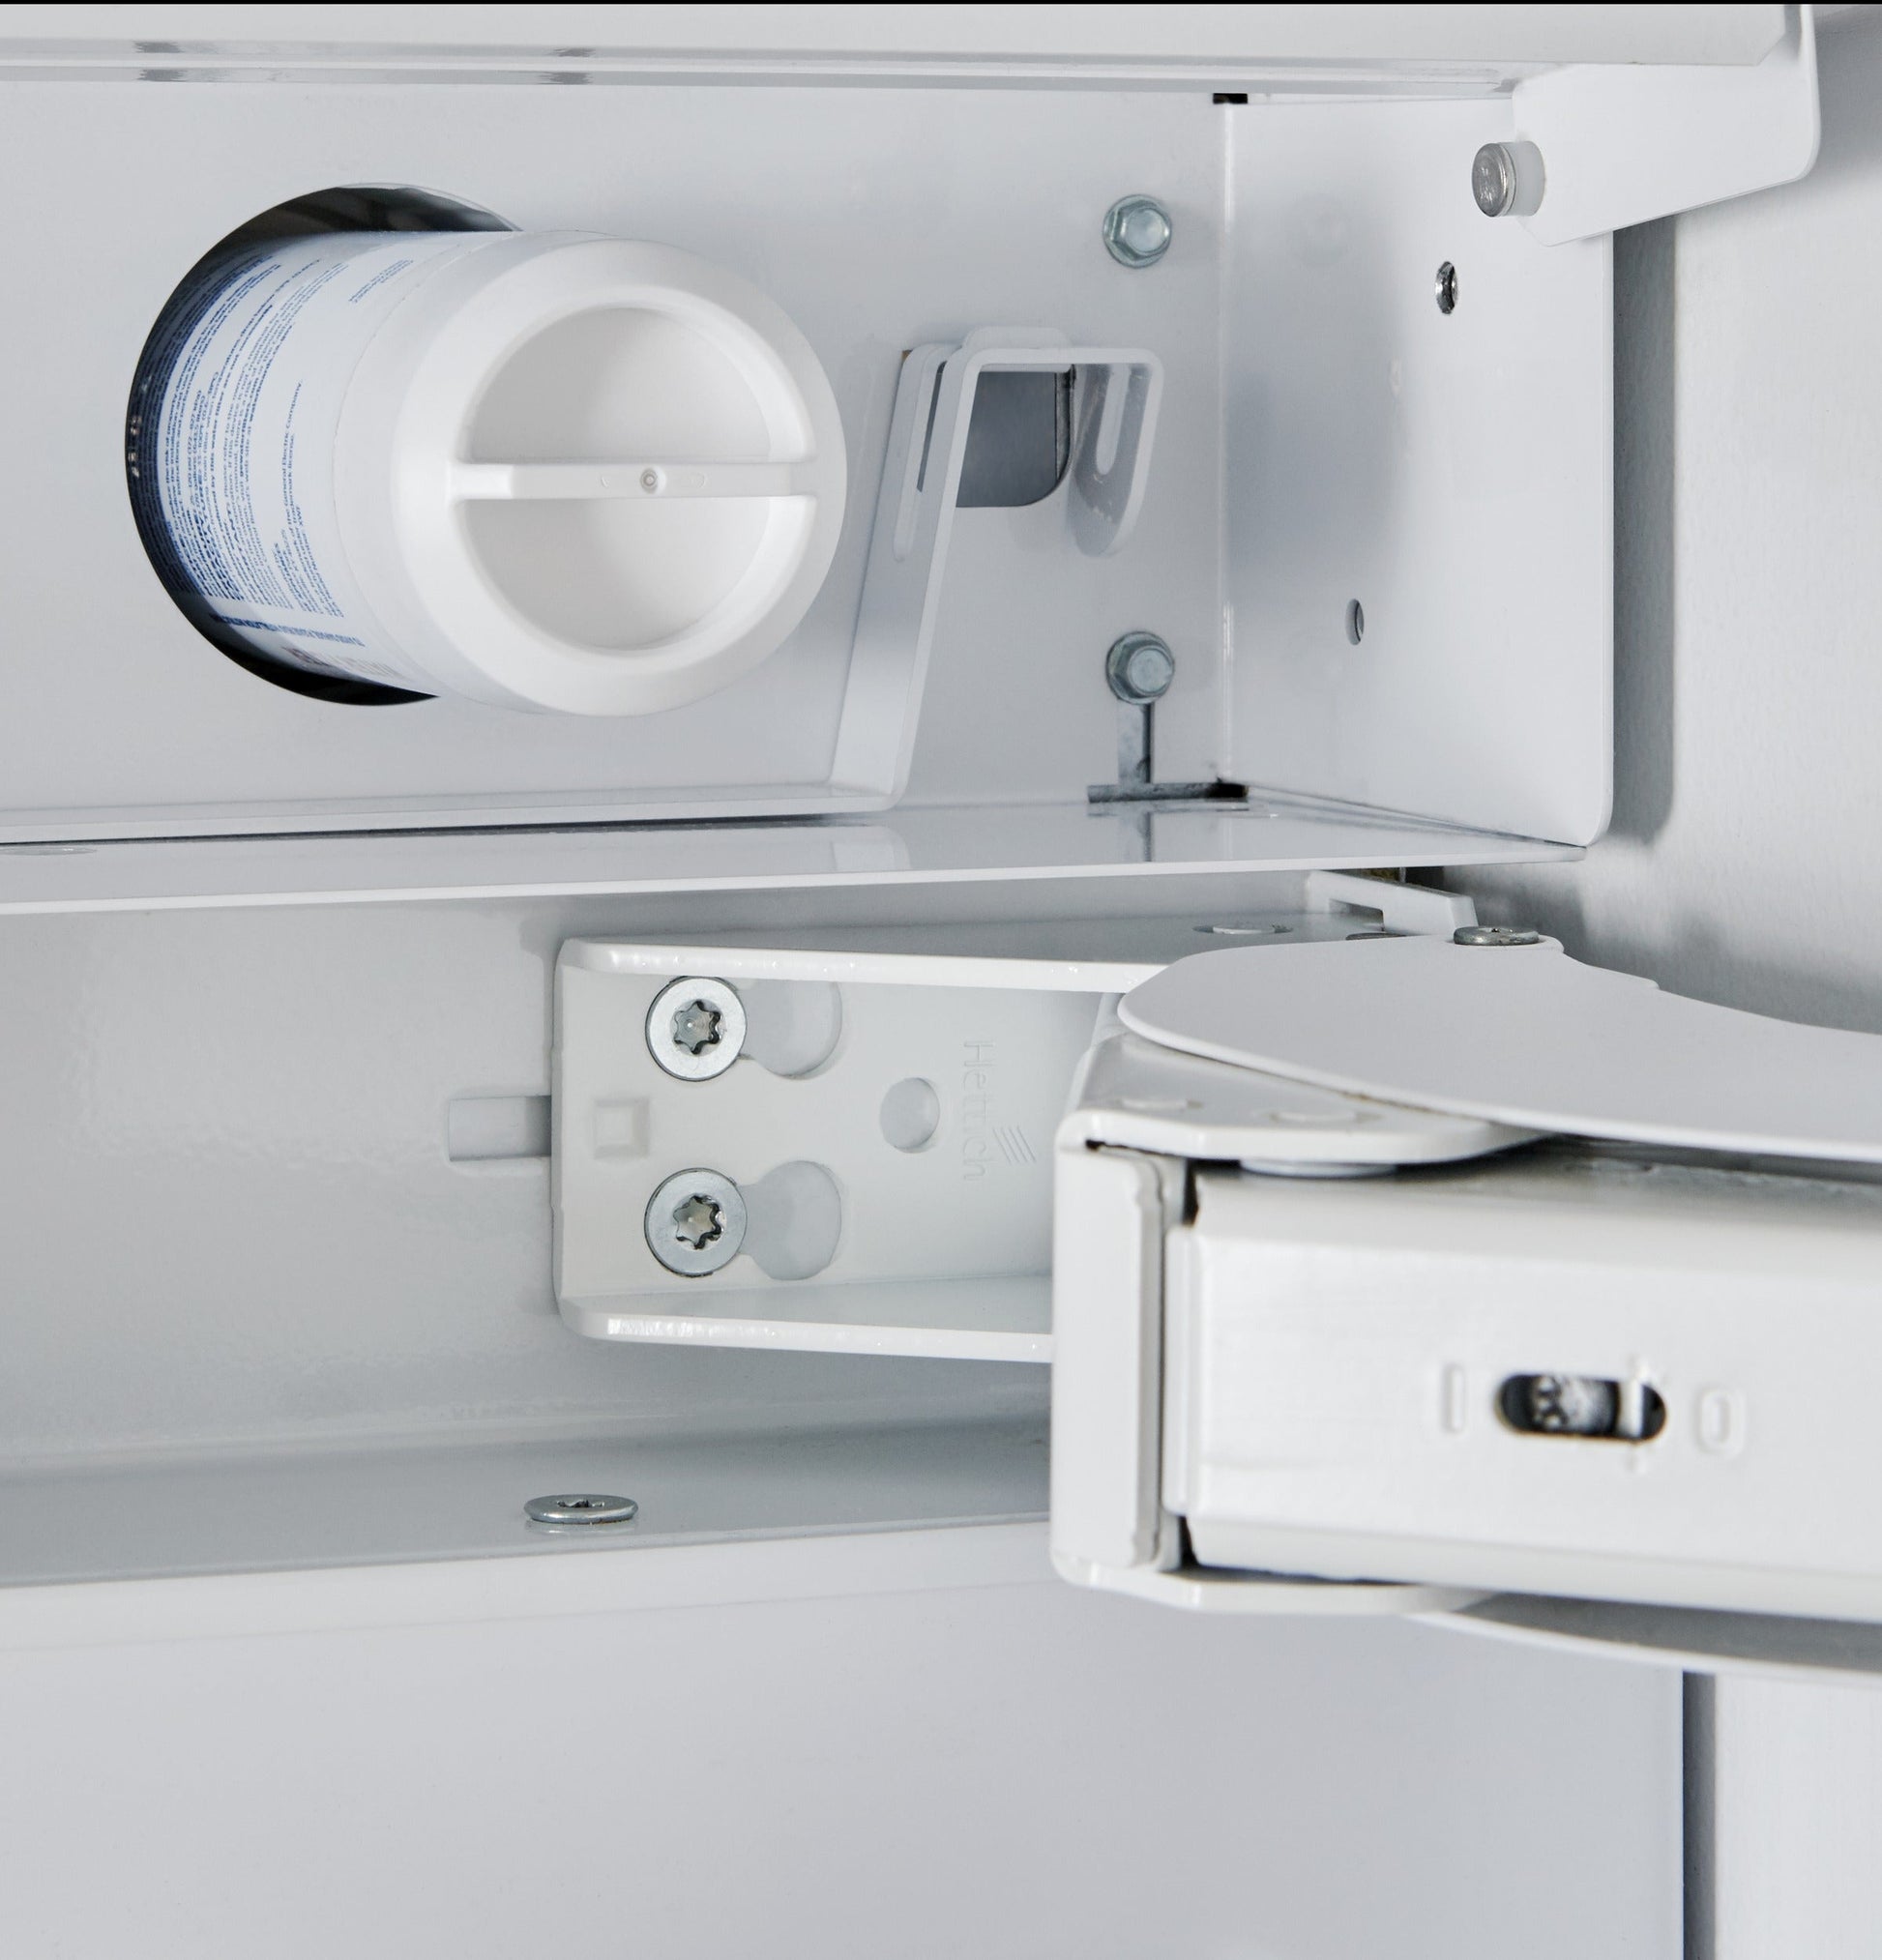 Monogram 30" Fully Integrated Column Refrigerator - ZIR301NPNII